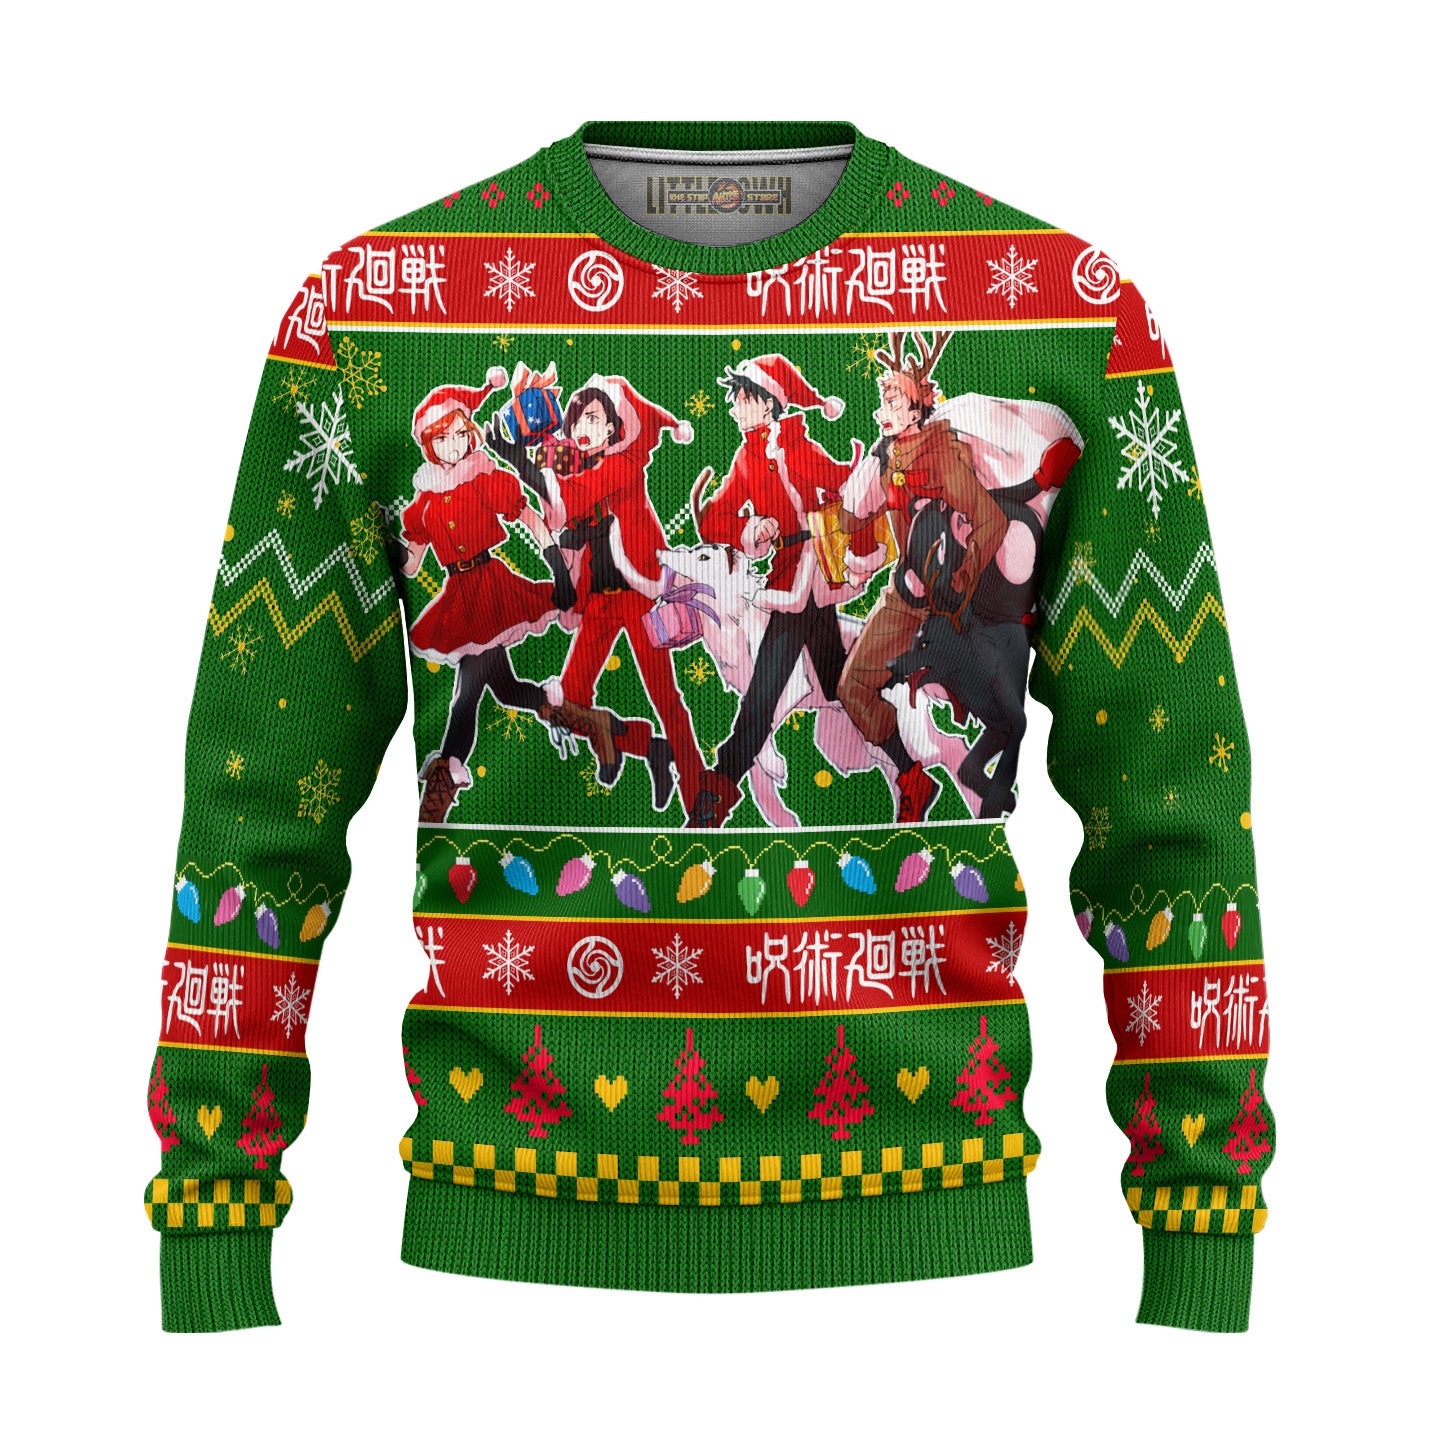 Master Roshi Dragon Ball Anime Ugly Christmas Sweater New Design